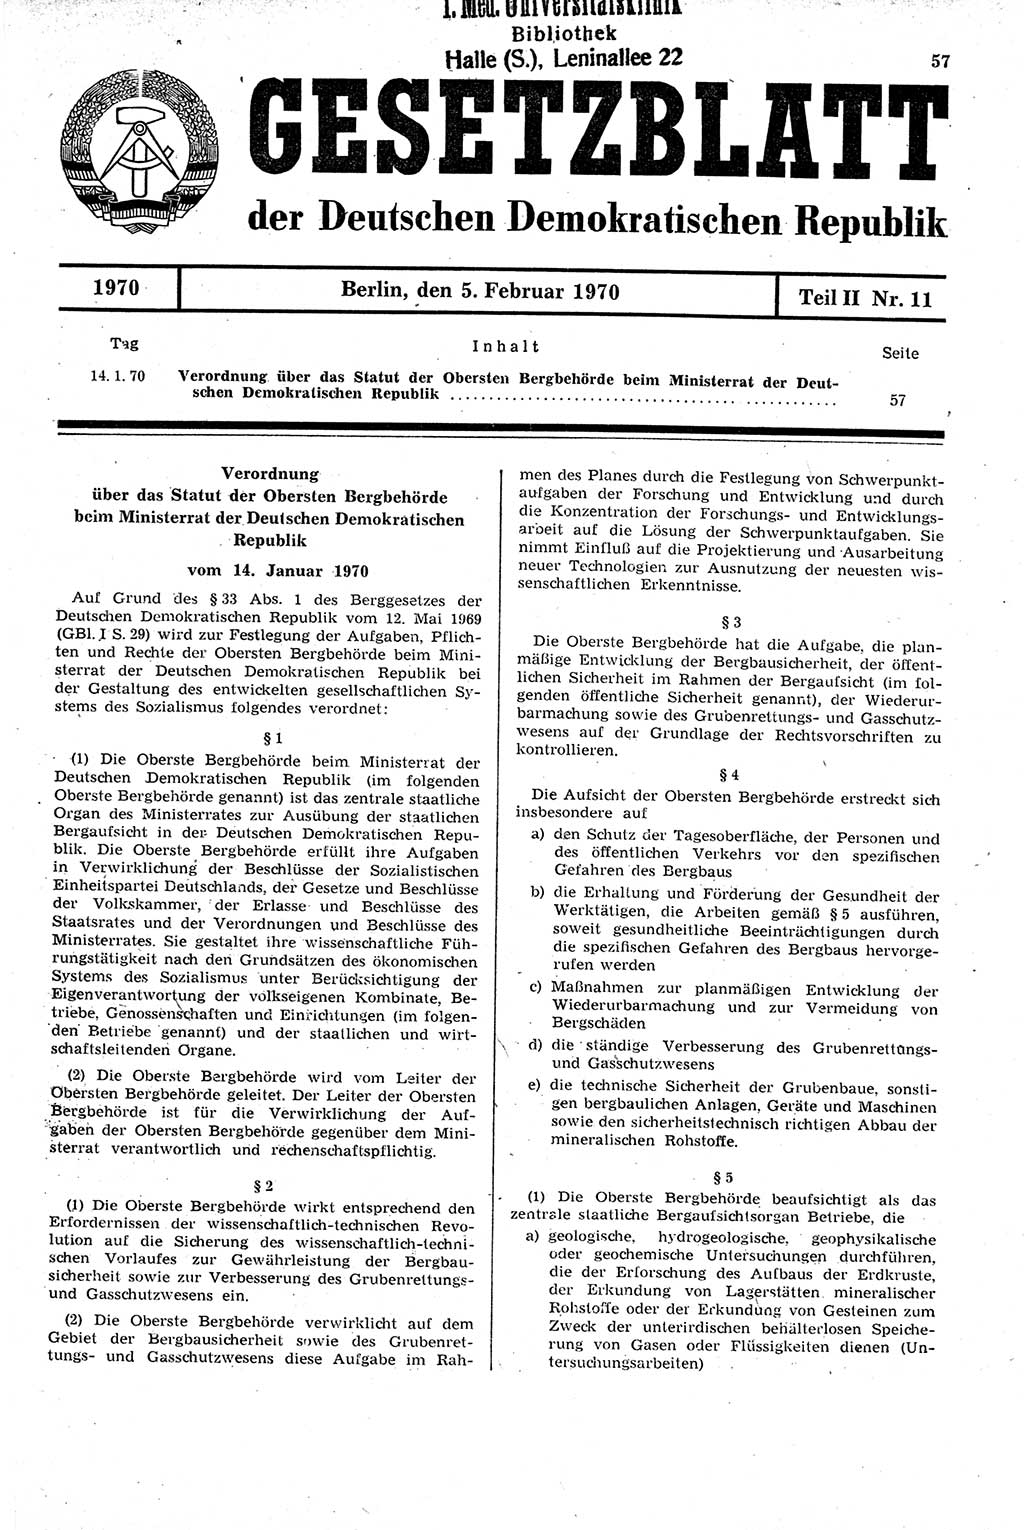 Gesetzblatt (GBl.) der Deutschen Demokratischen Republik (DDR) Teil ⅠⅠ 1970, Seite 57 (GBl. DDR ⅠⅠ 1970, S. 57)